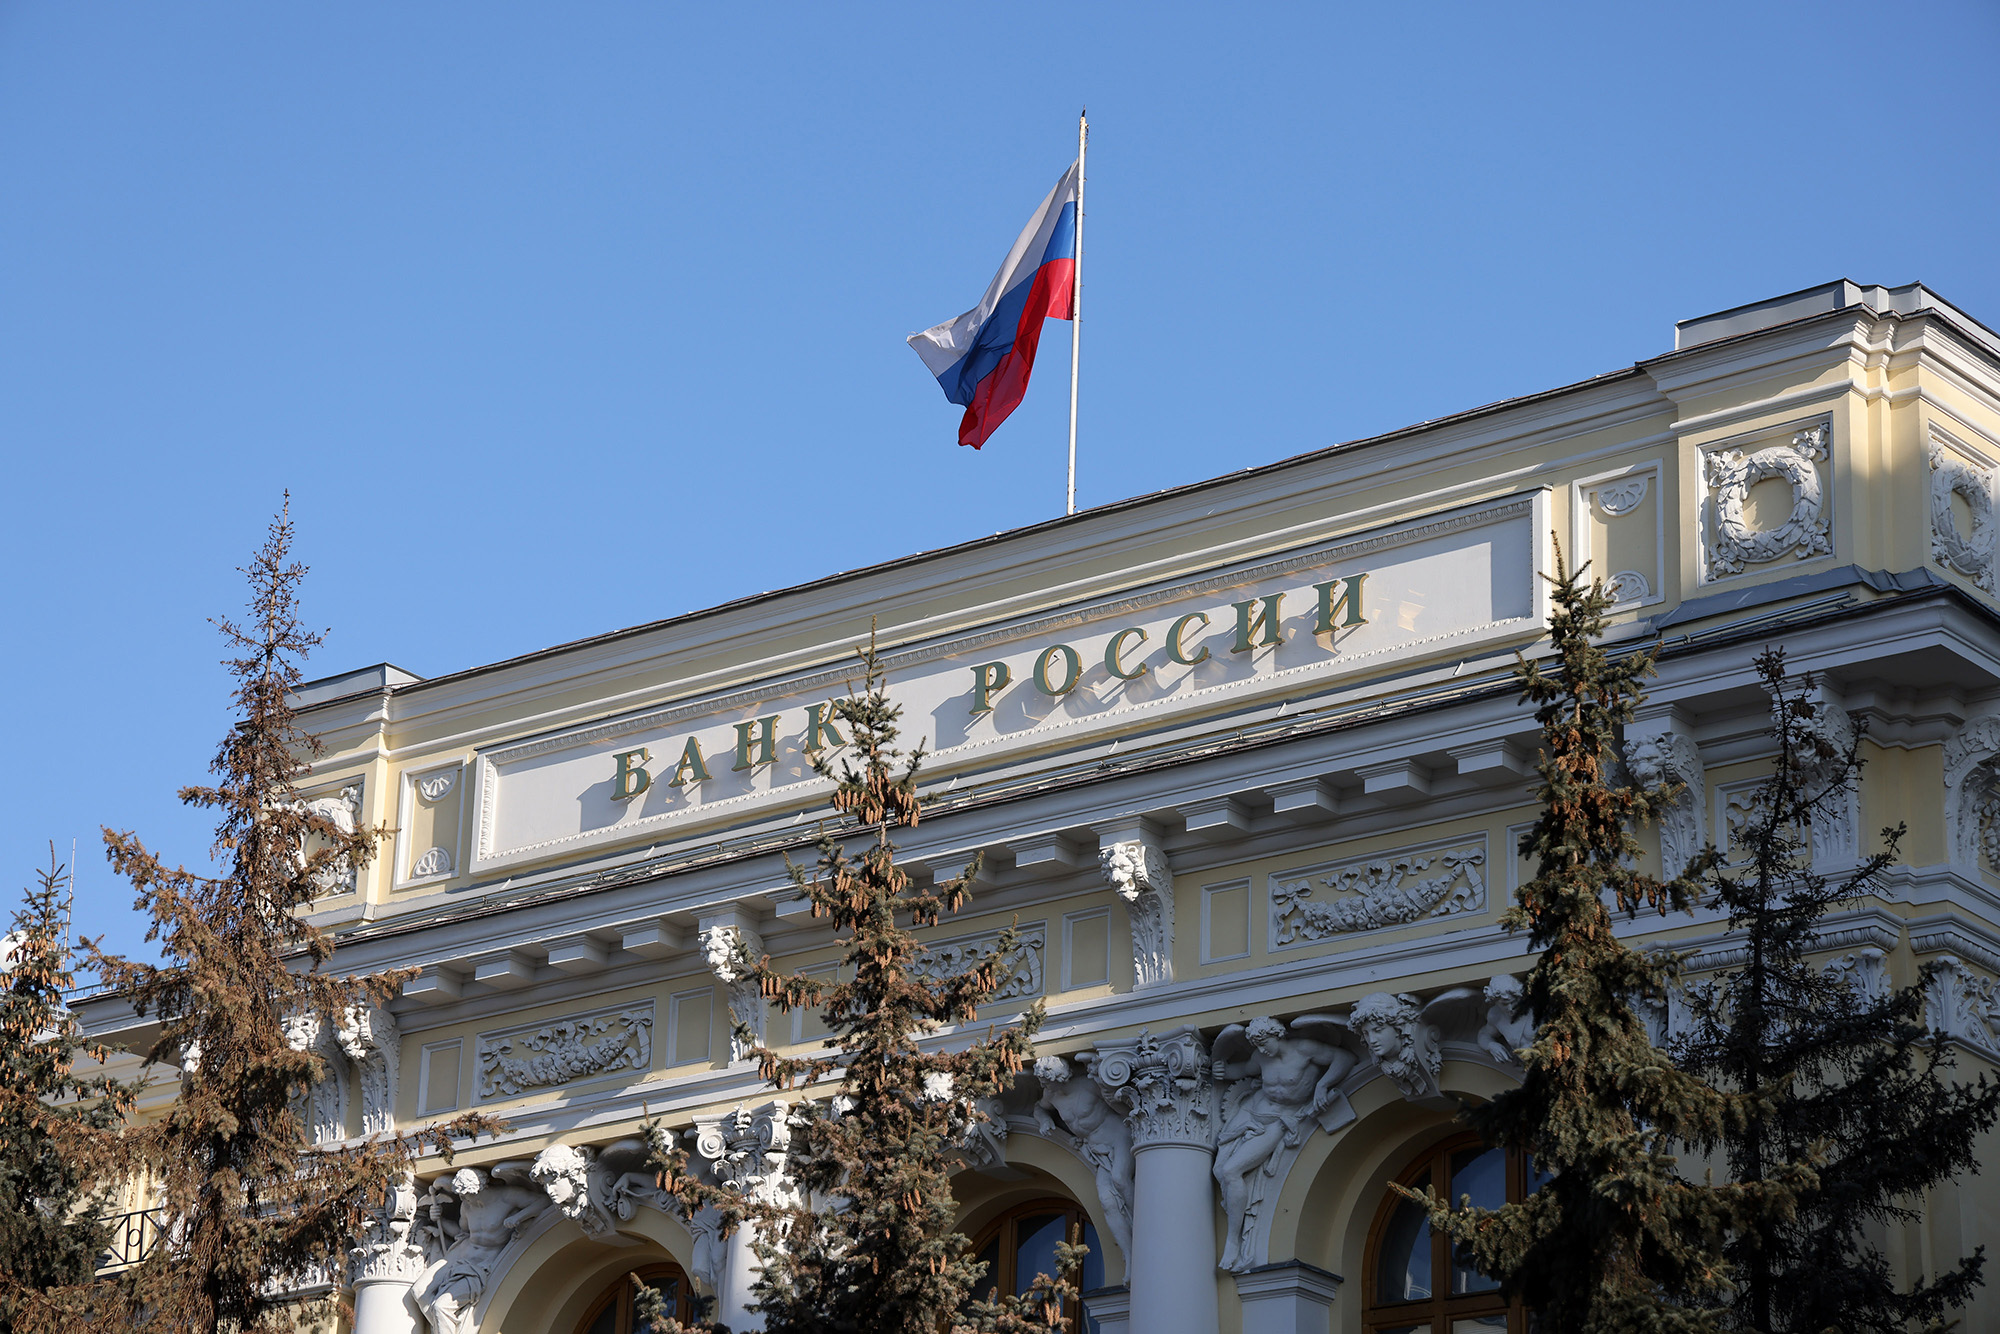 Một quốc gia nga lá cờ ở trên trụ sở của Ngân hàng Rossii, ngân hàng trung ương Nga, ở Moscow, vào ngày 28.